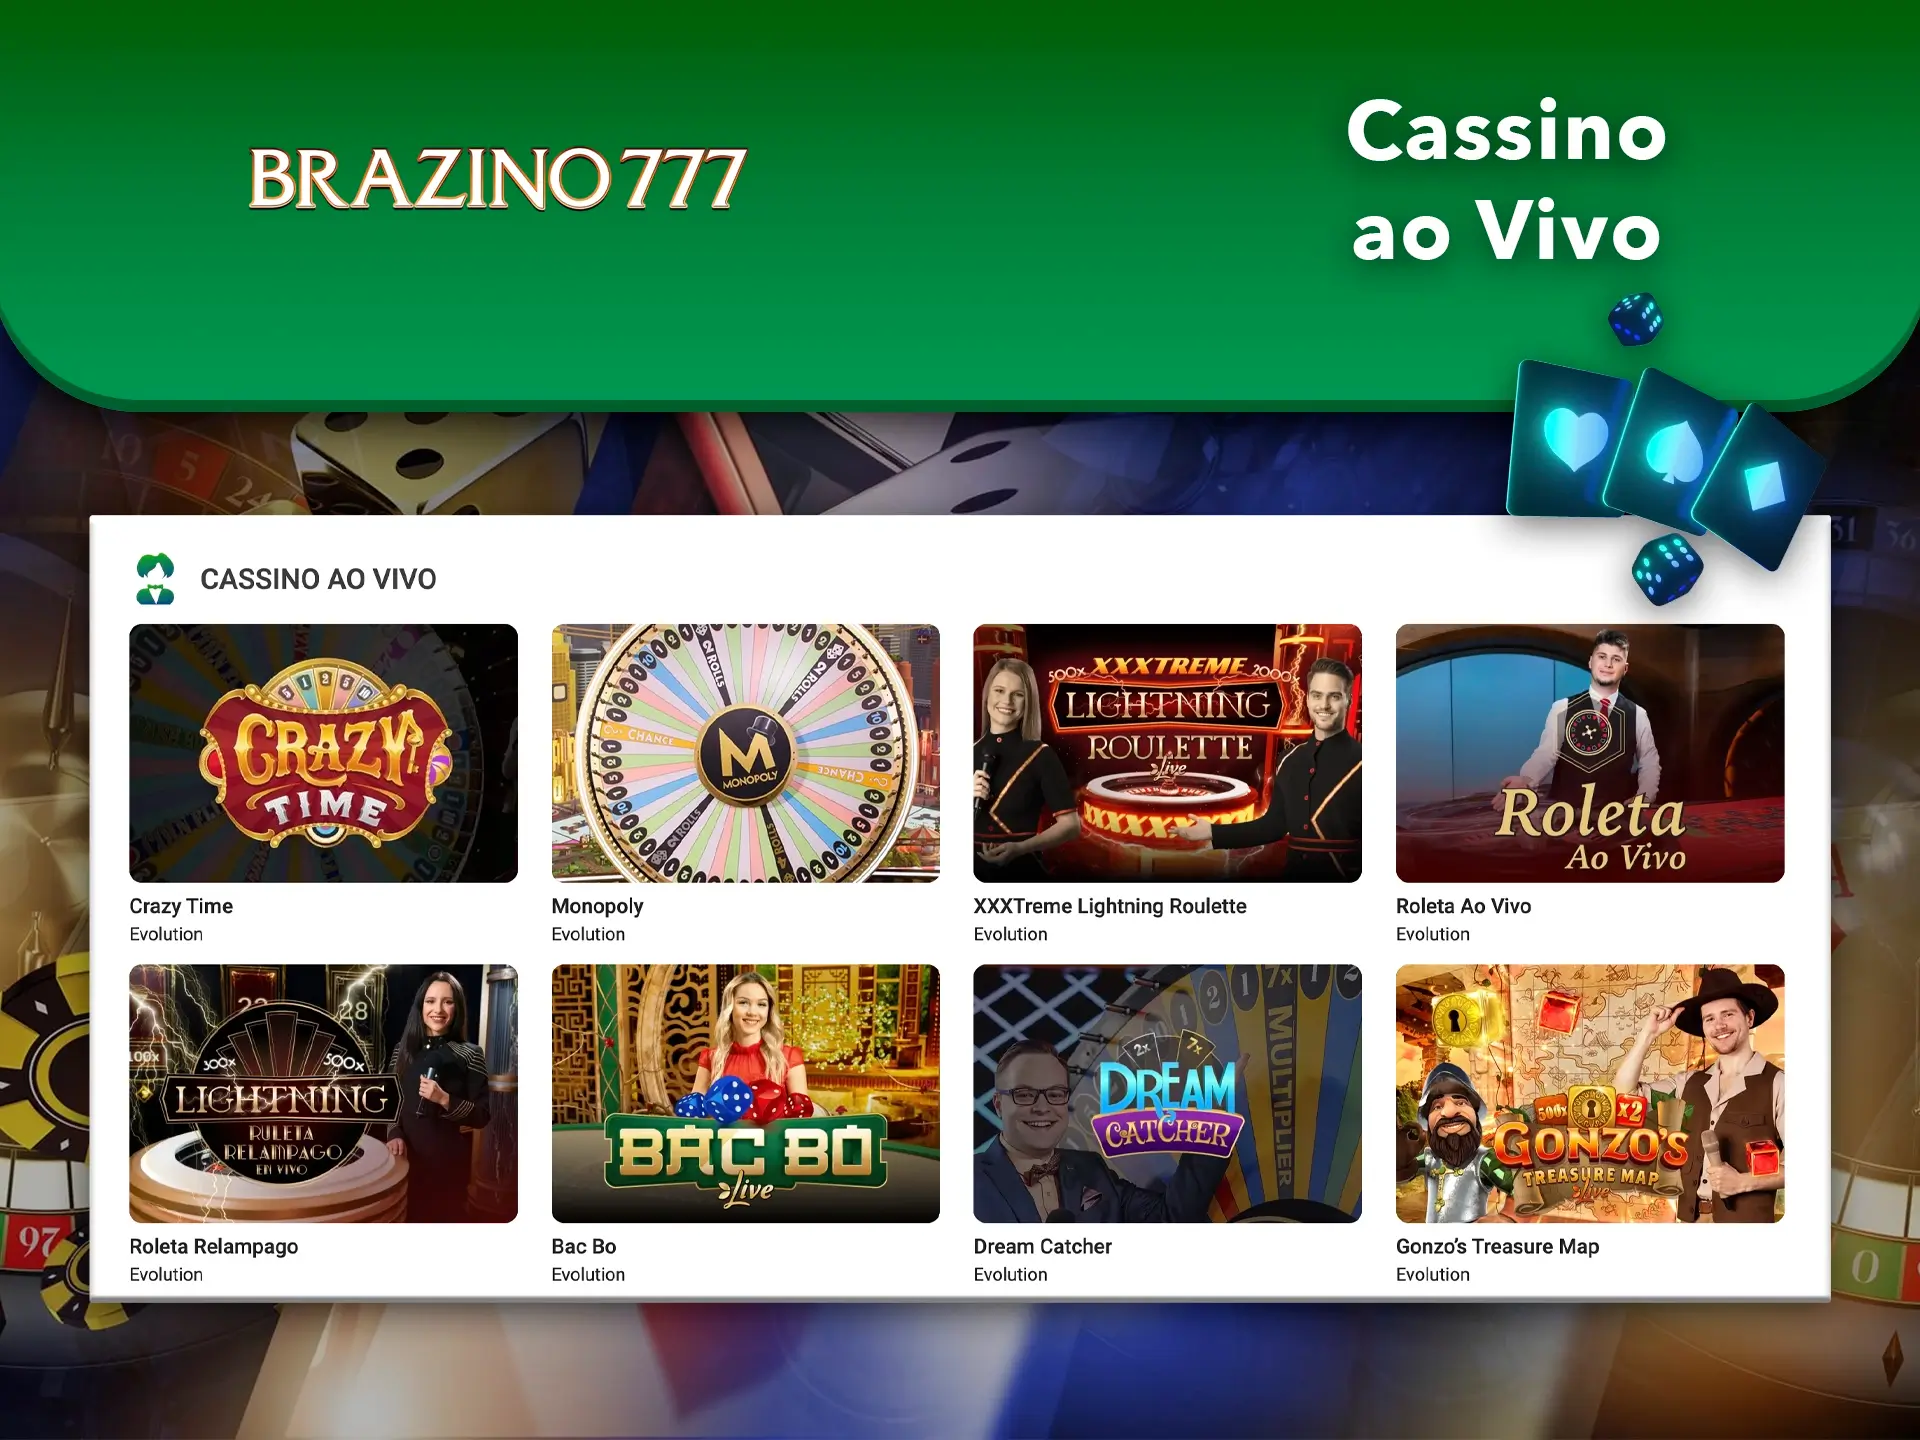 Mergulhe na atmosfera de emoção ao jogar com dealers reais no Casino Brazino777.